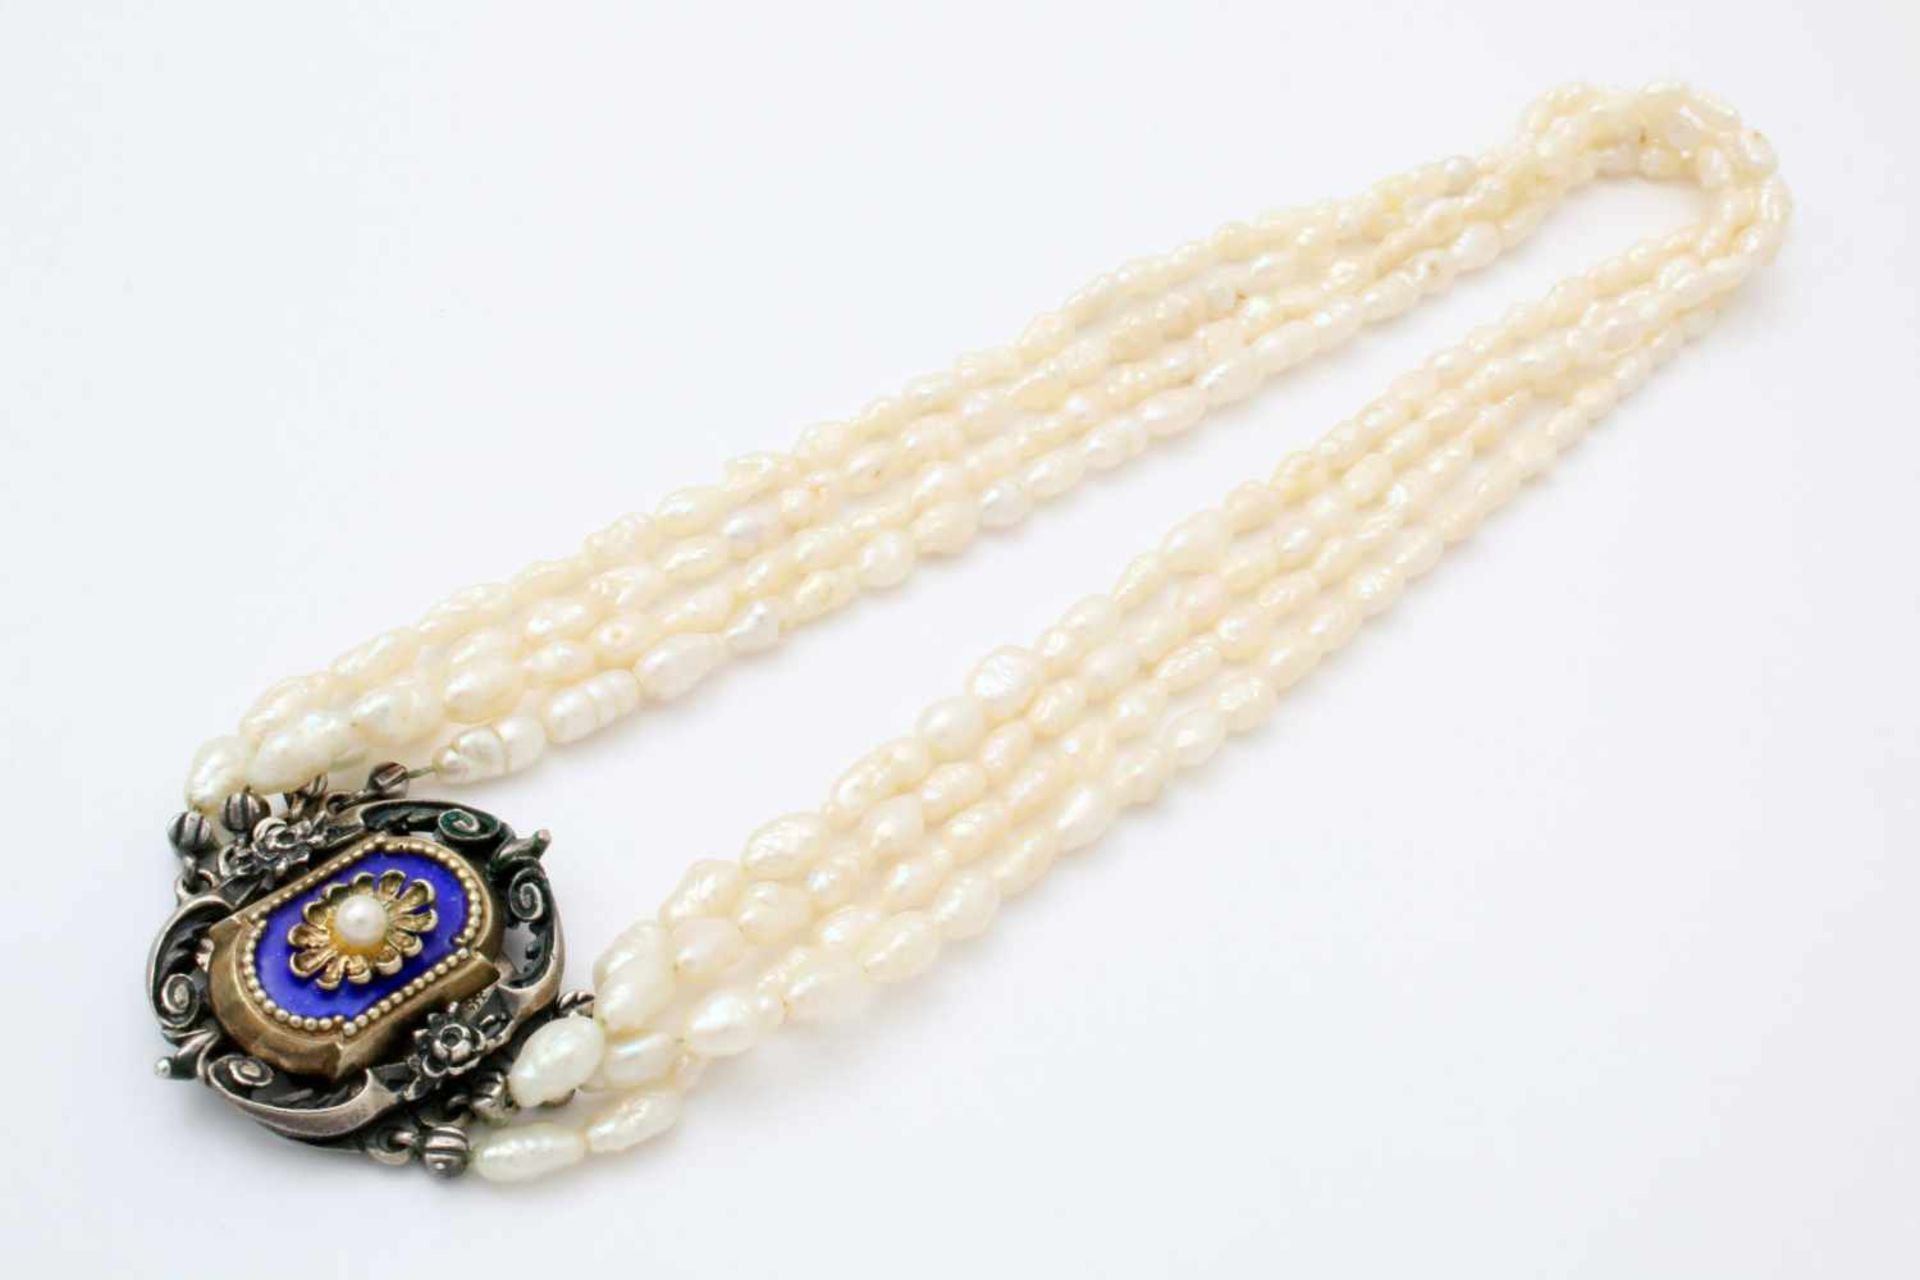 2 Halsketten - Biwa und Malachit Biwaperlenkette vierreihig mit silbernem Trachtenverschluss / - Image 5 of 5